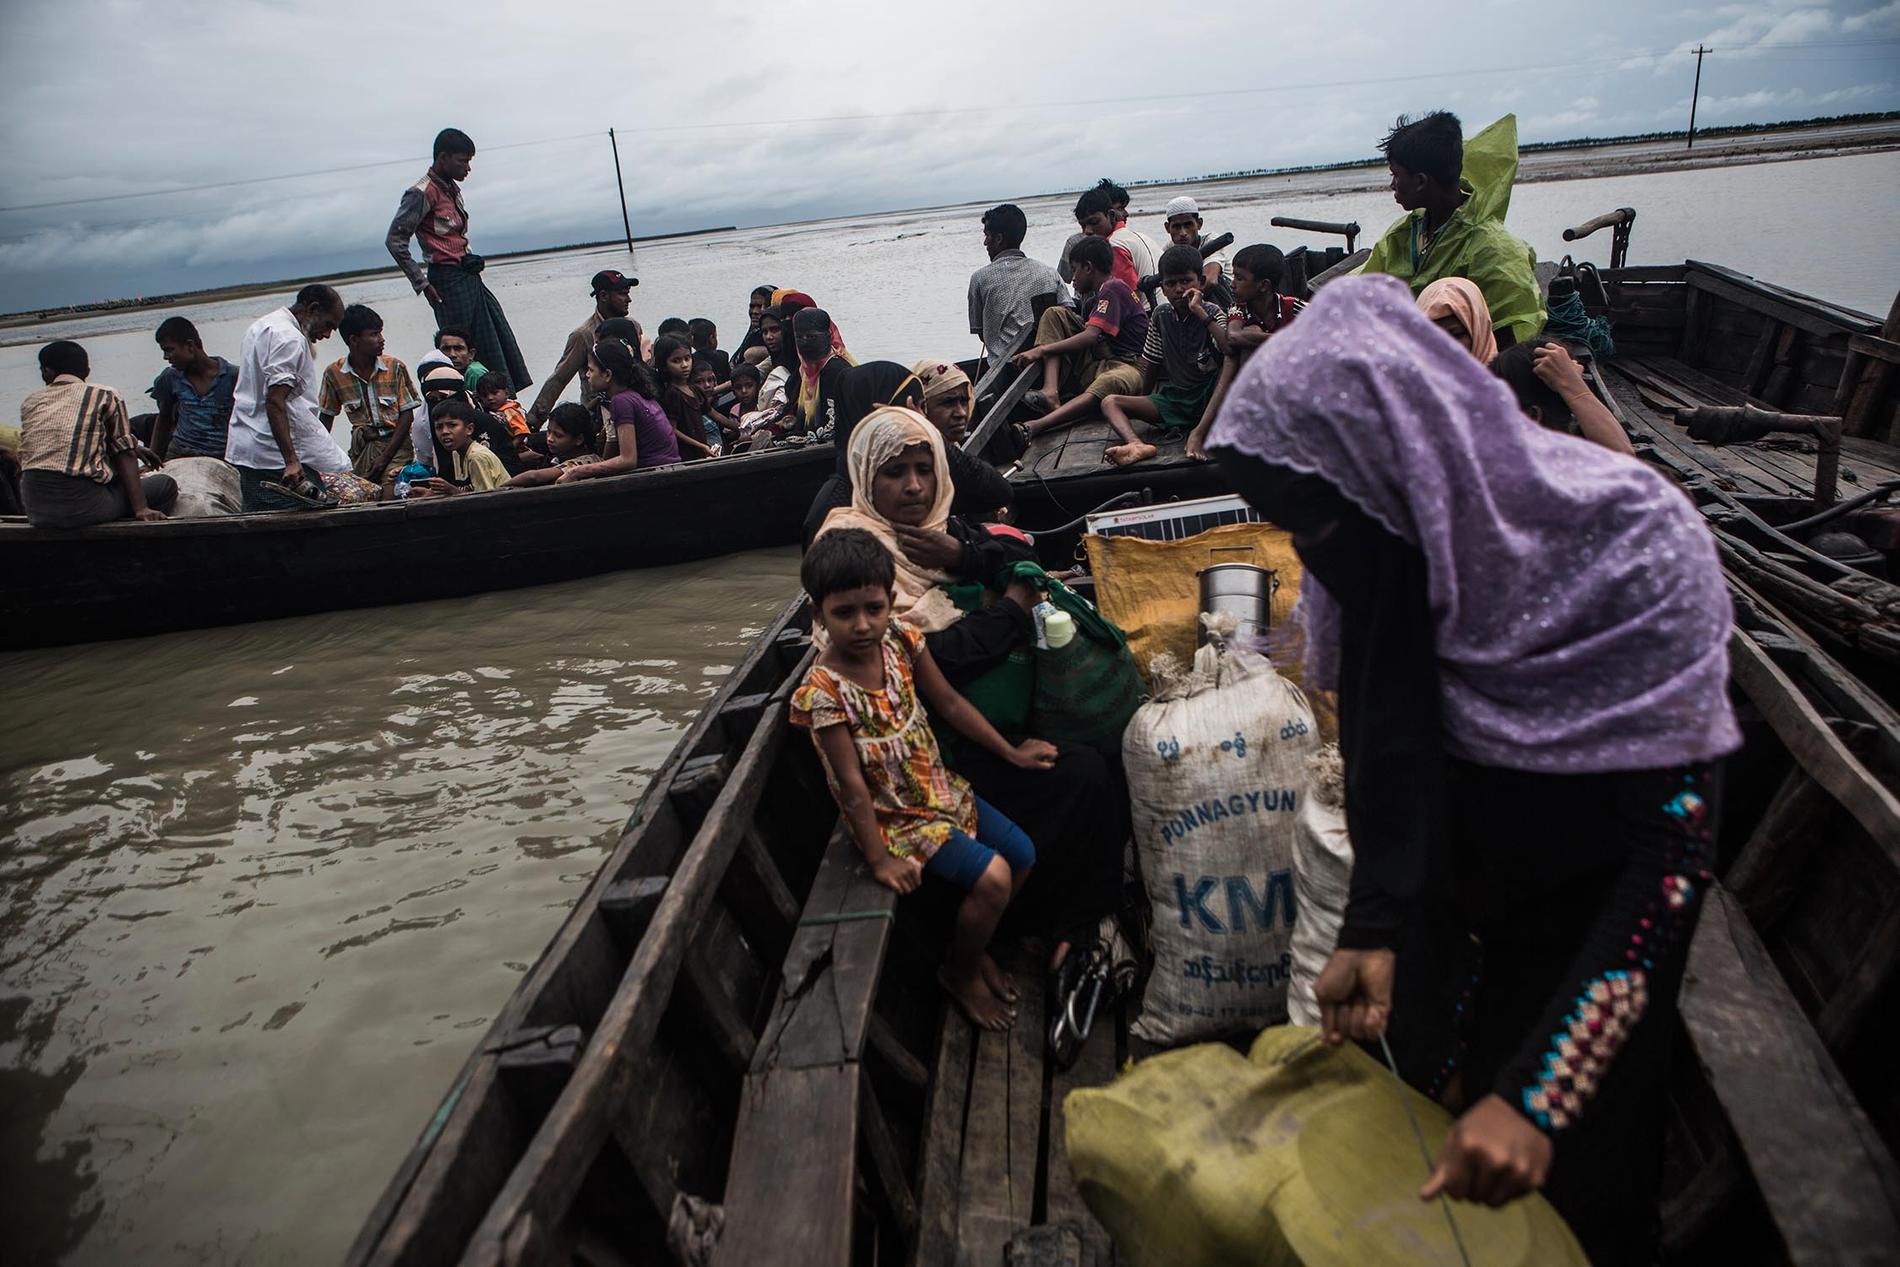 Flyktingarna har precis kommit till Bangladesh sedan de flytt Burma med båt.